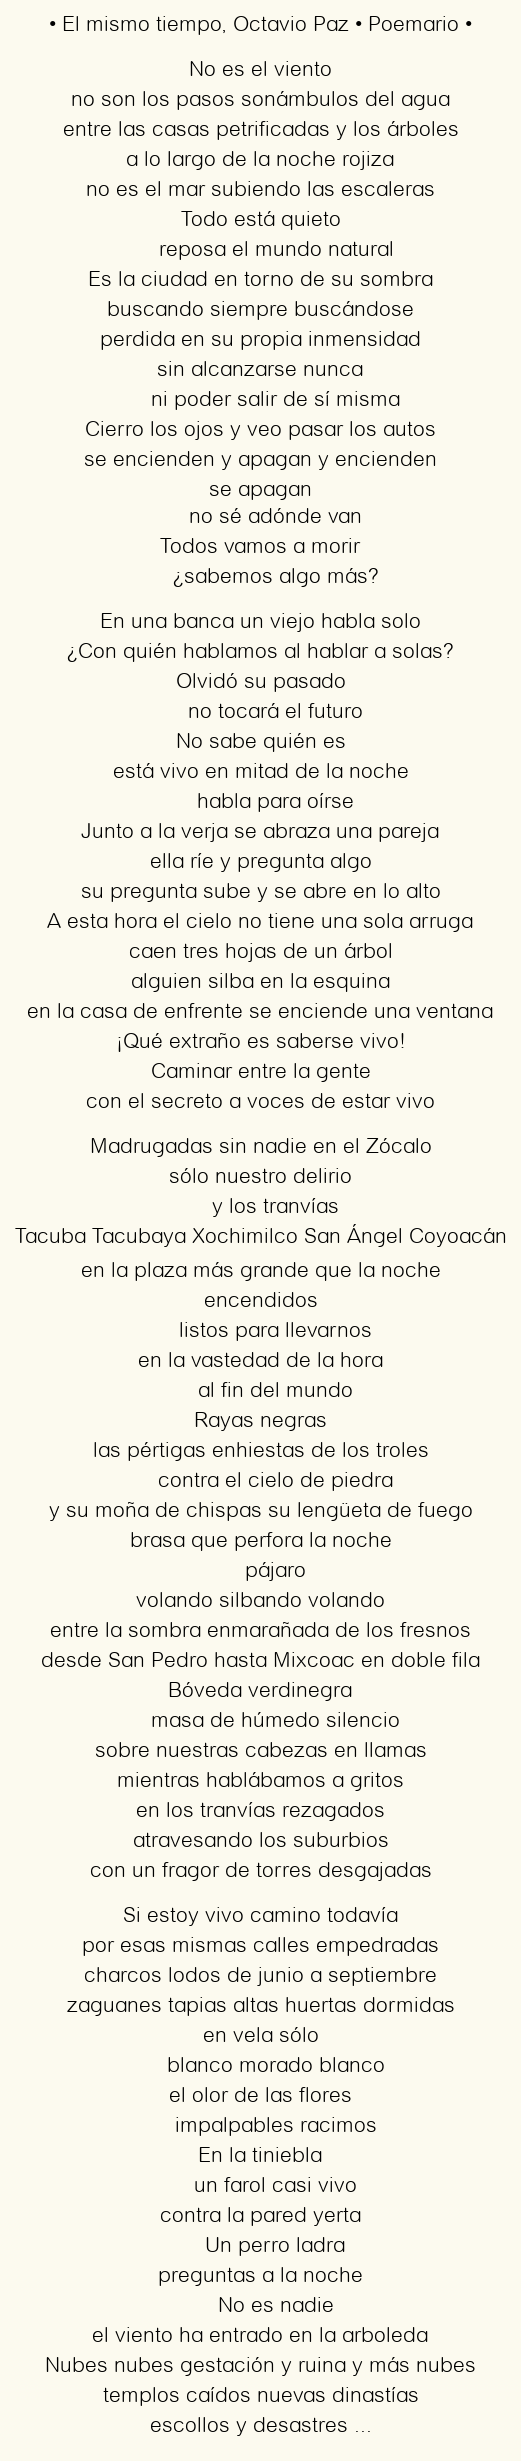 Imagen con el poema El mismo tiempo, por Octavio Paz